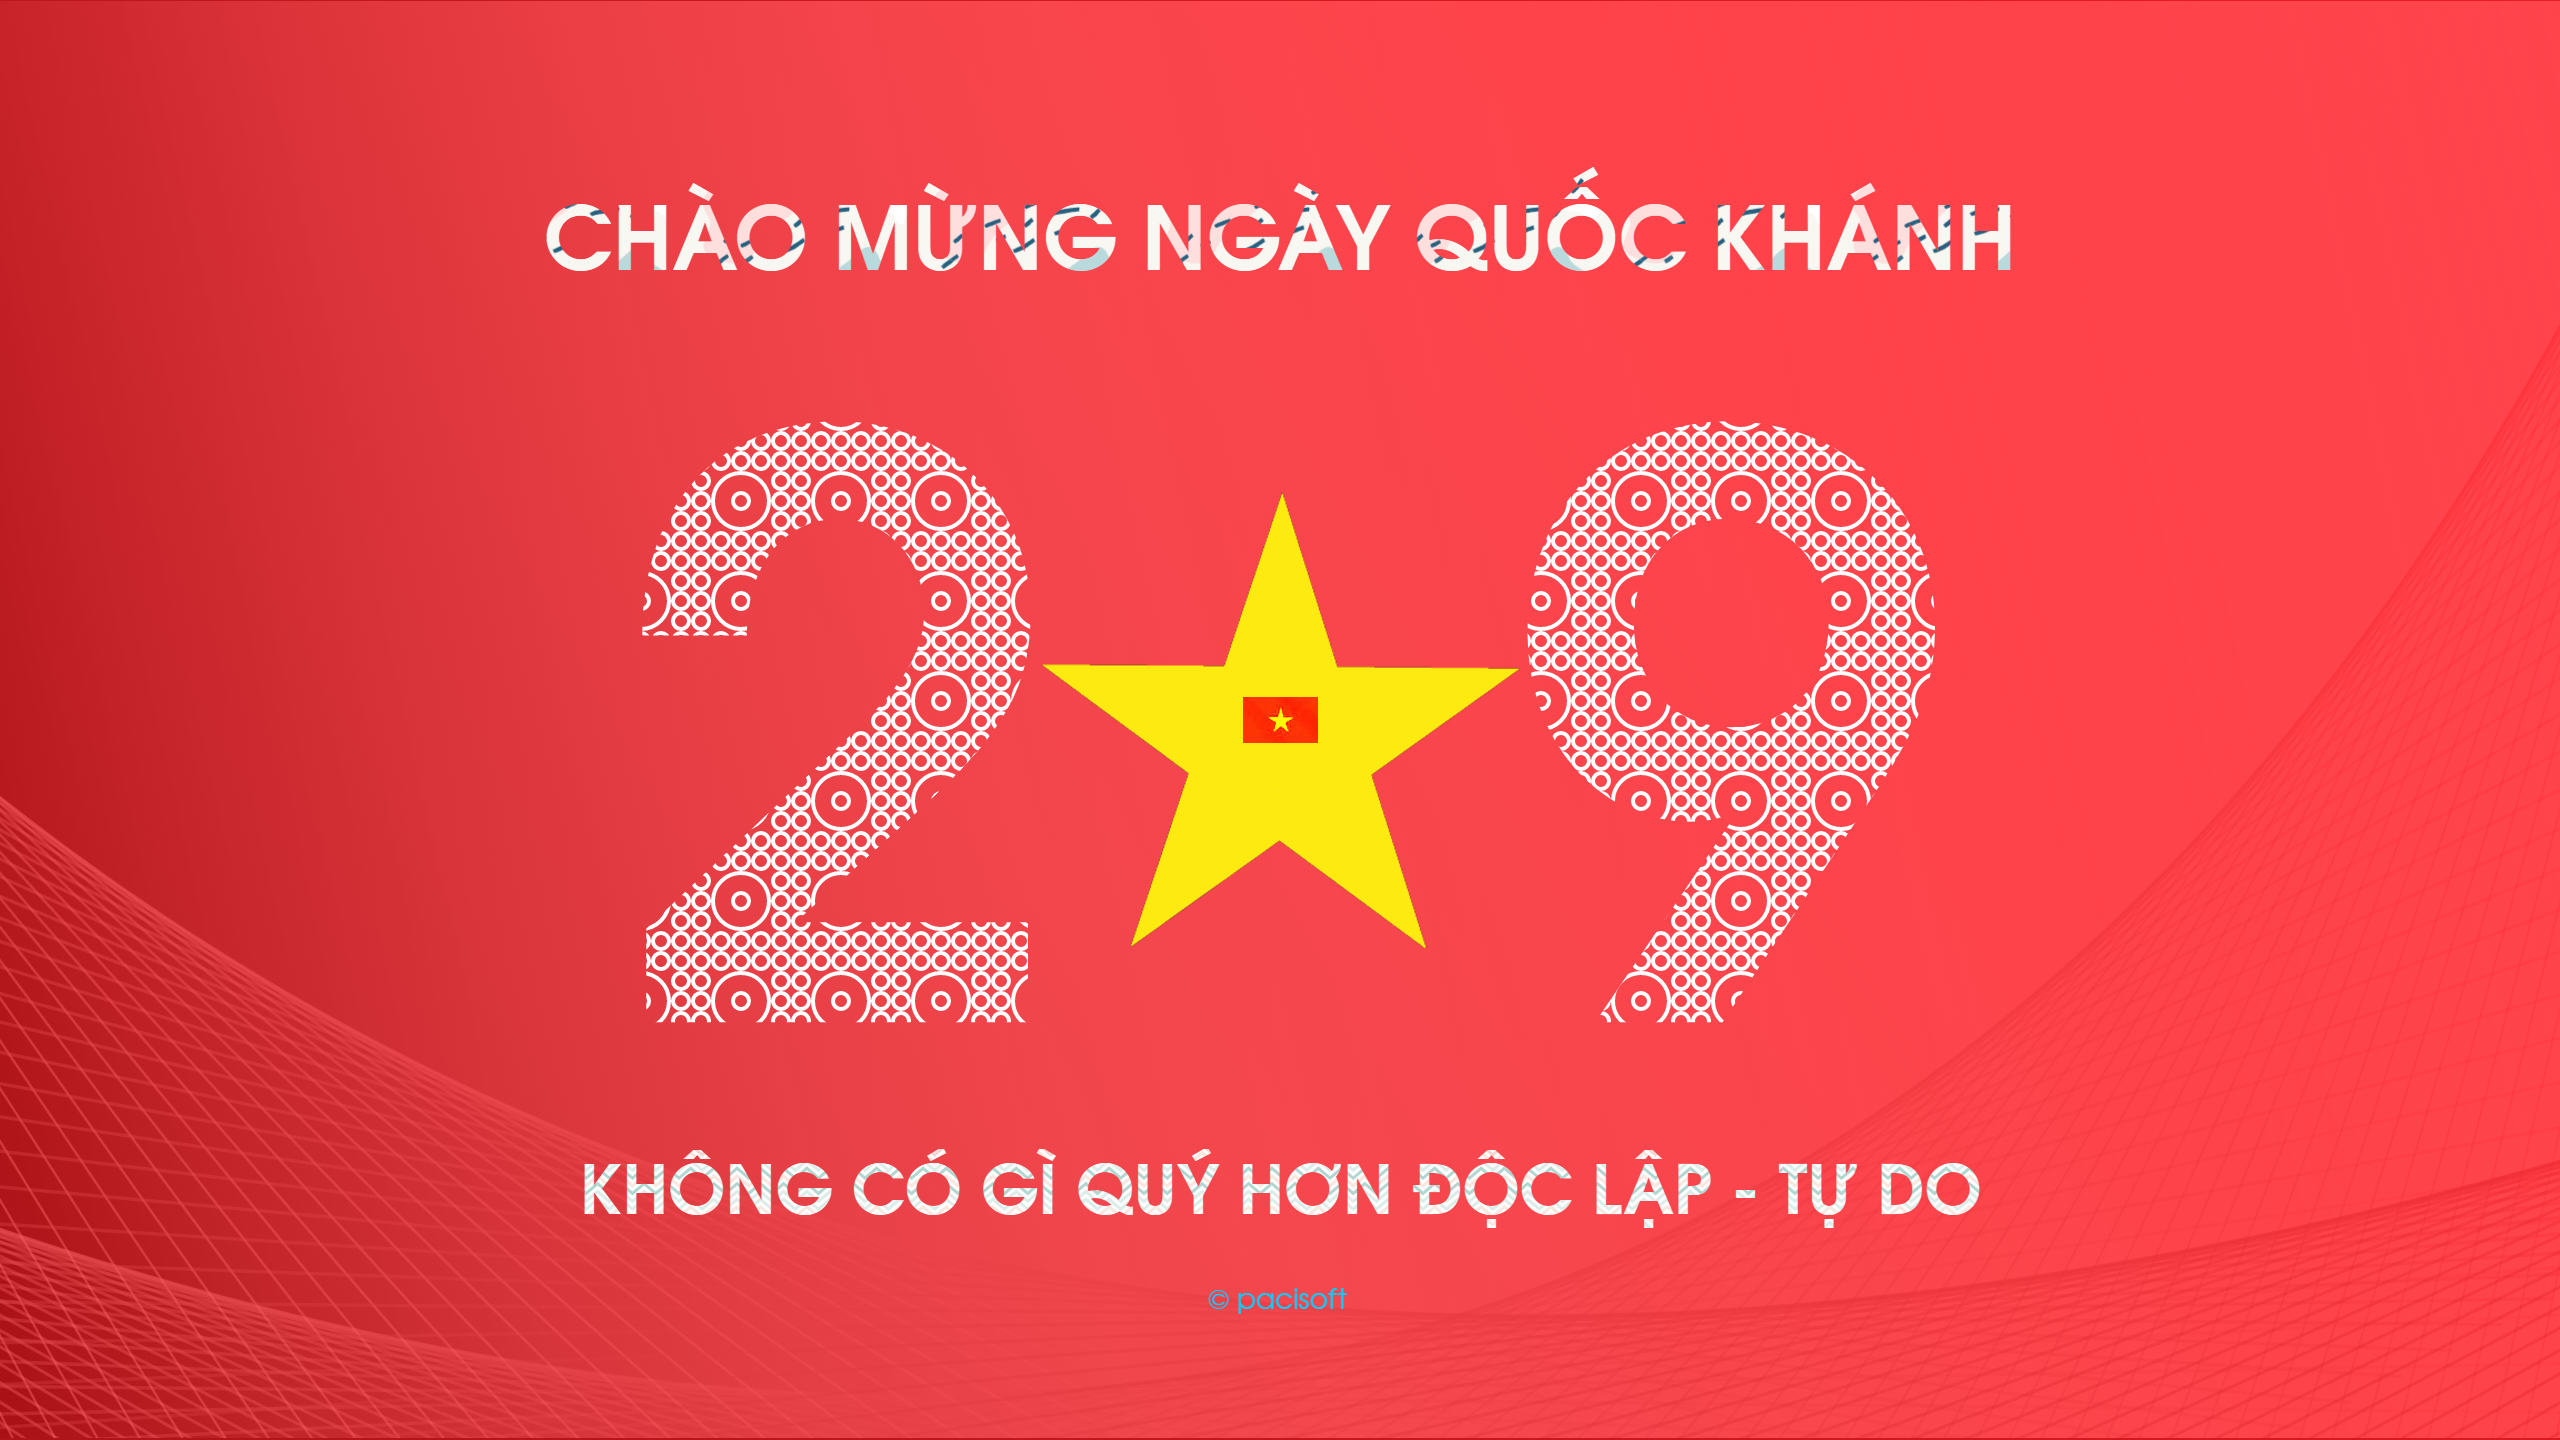 Nghỉ lễ Quốc Khánh: Quốc Khánh là ngày lễ quan trọng của cả dân tộc Việt Nam. Năm nay, hãy dành thời gian để thư giãn cùng gia đình và bạn bè trong kỳ nghỉ ngắn ngủi này. Tìm hiểu thêm thông tin về các hoạt động lễ hội trên trang web chính thức của Redsvn.net để tận hưởng kỳ nghỉ một cách ý nghĩa và tràn đầy cảm xúc.